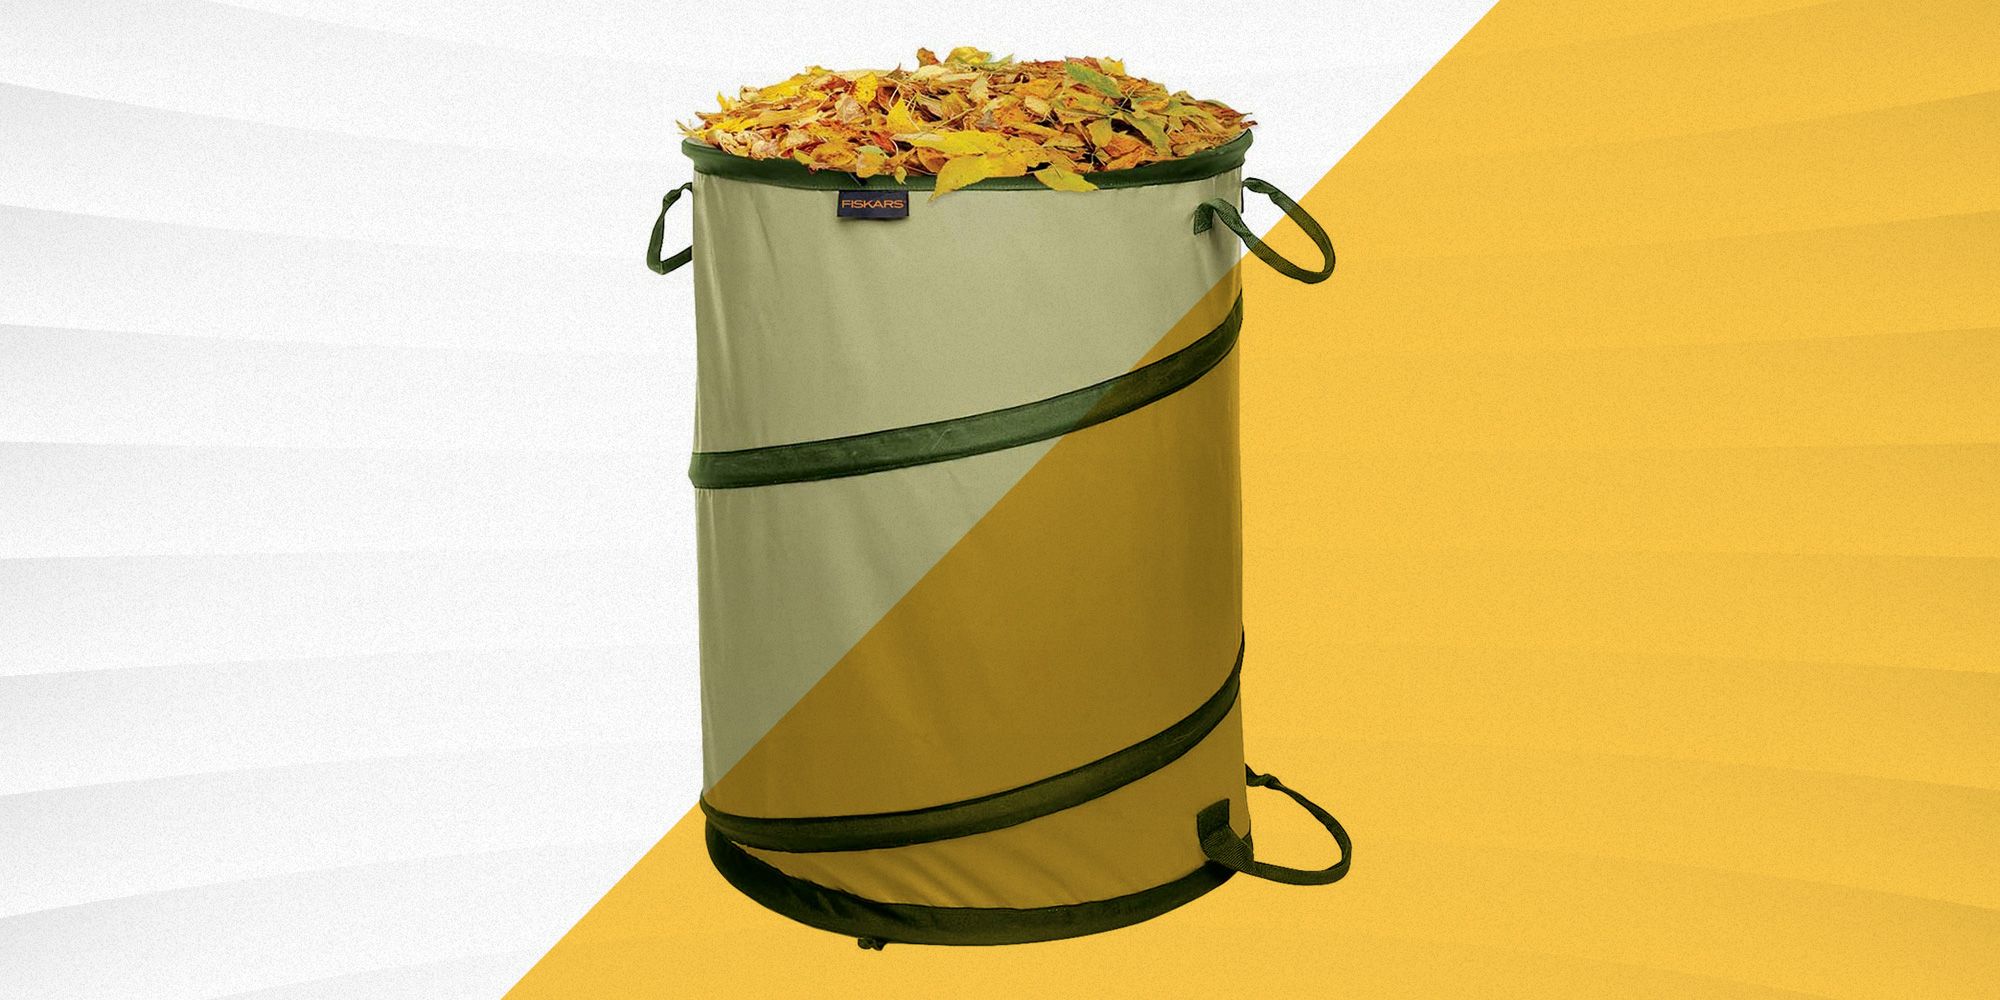 60L Garden Leaf Bag Reusable Yard Garden Waste Storage Holder Bag with Handles 